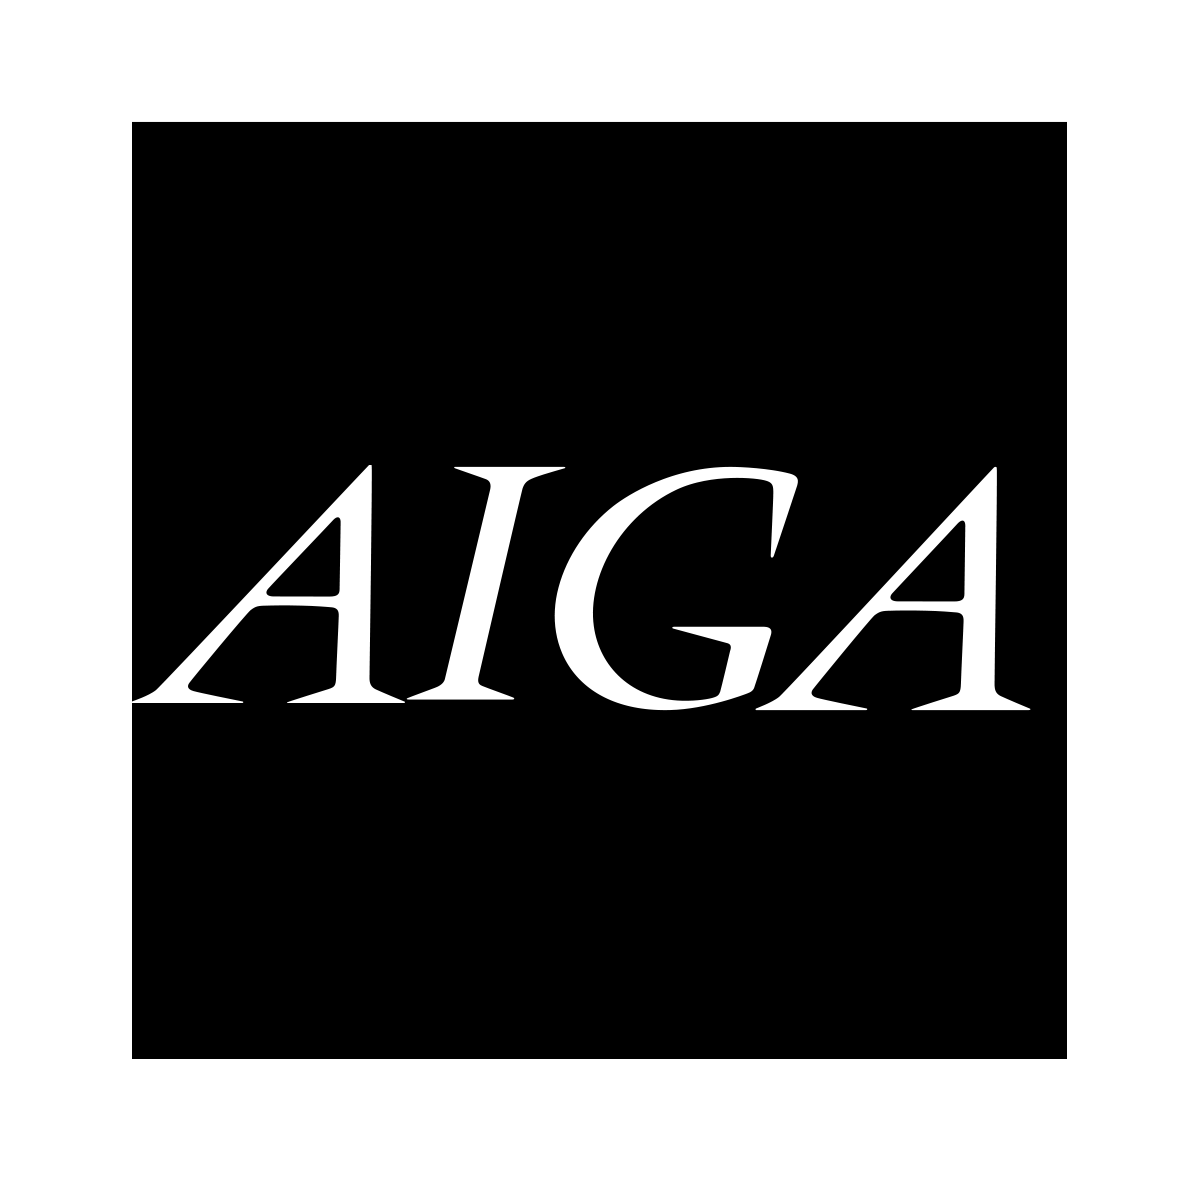 American Institute of Graphic Arts (AIGA) logo